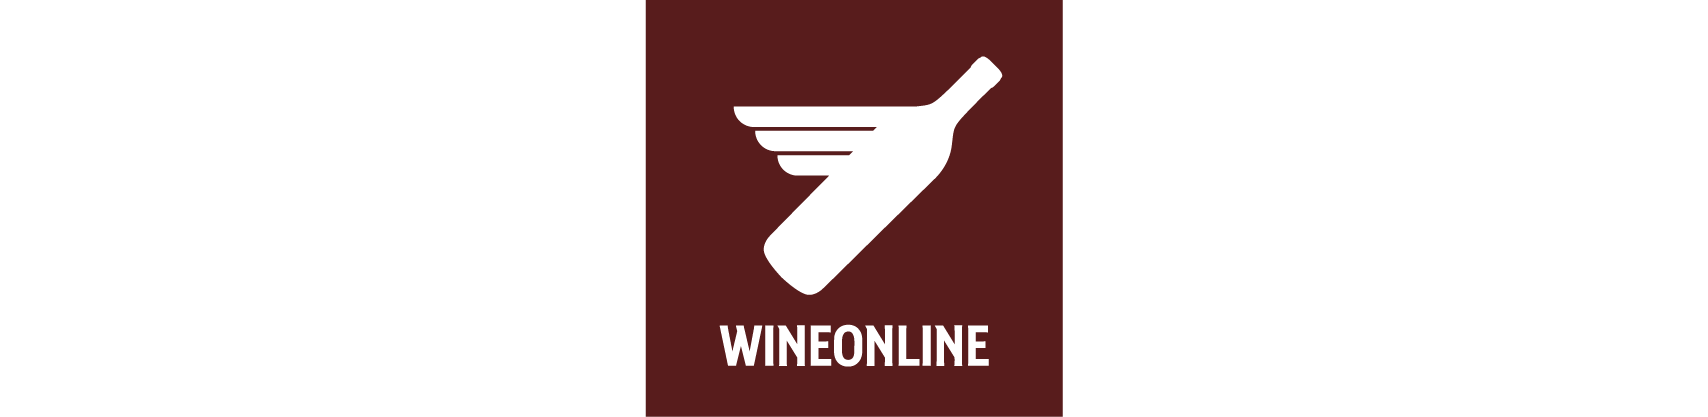 Wineonline.pl